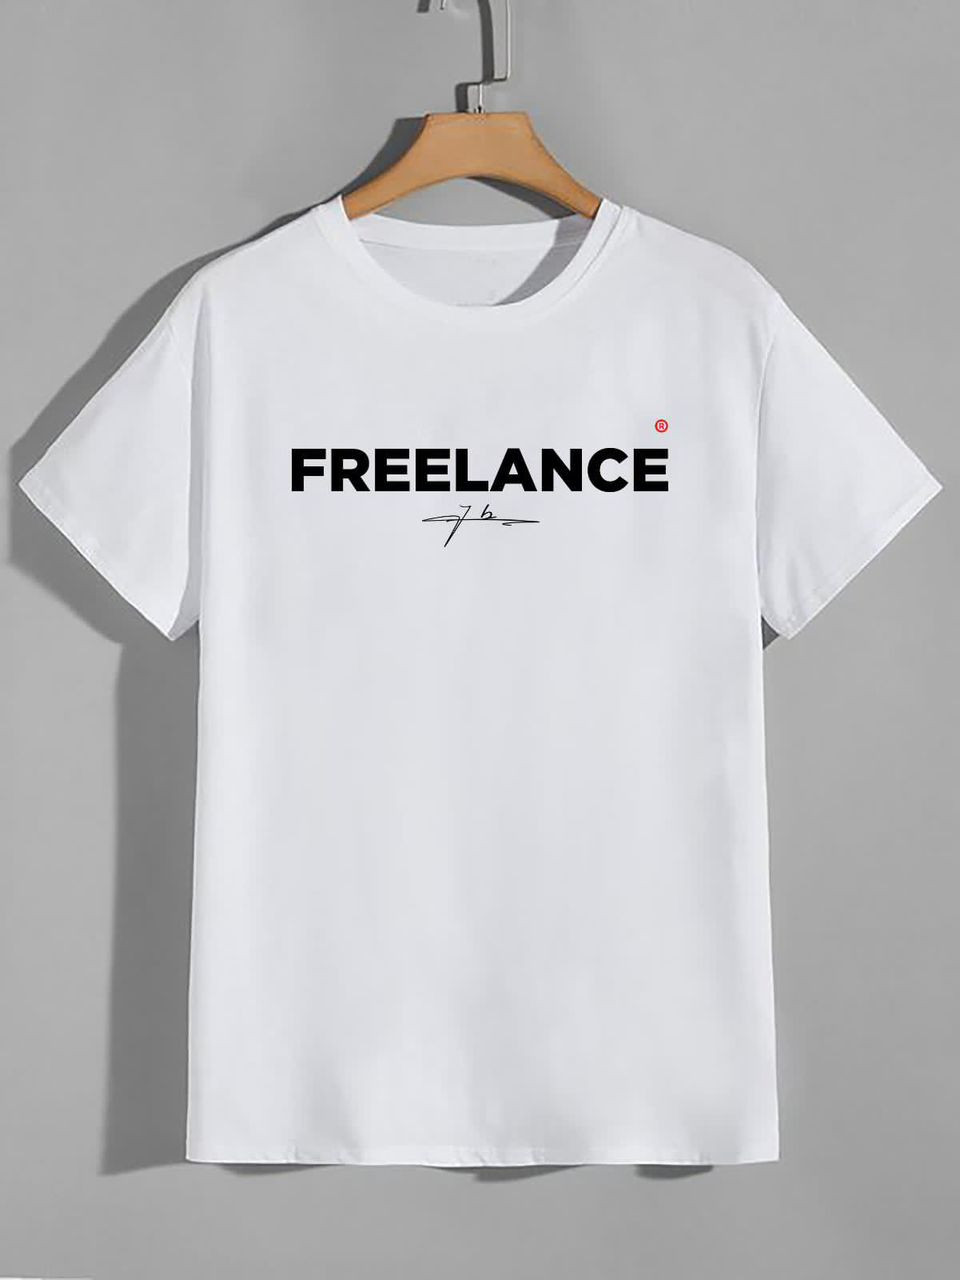 T-shirt FREELANCE pour jeunes hommes et femmes - Habit de tendance made by Jules Beco disponible en 3 couleurs